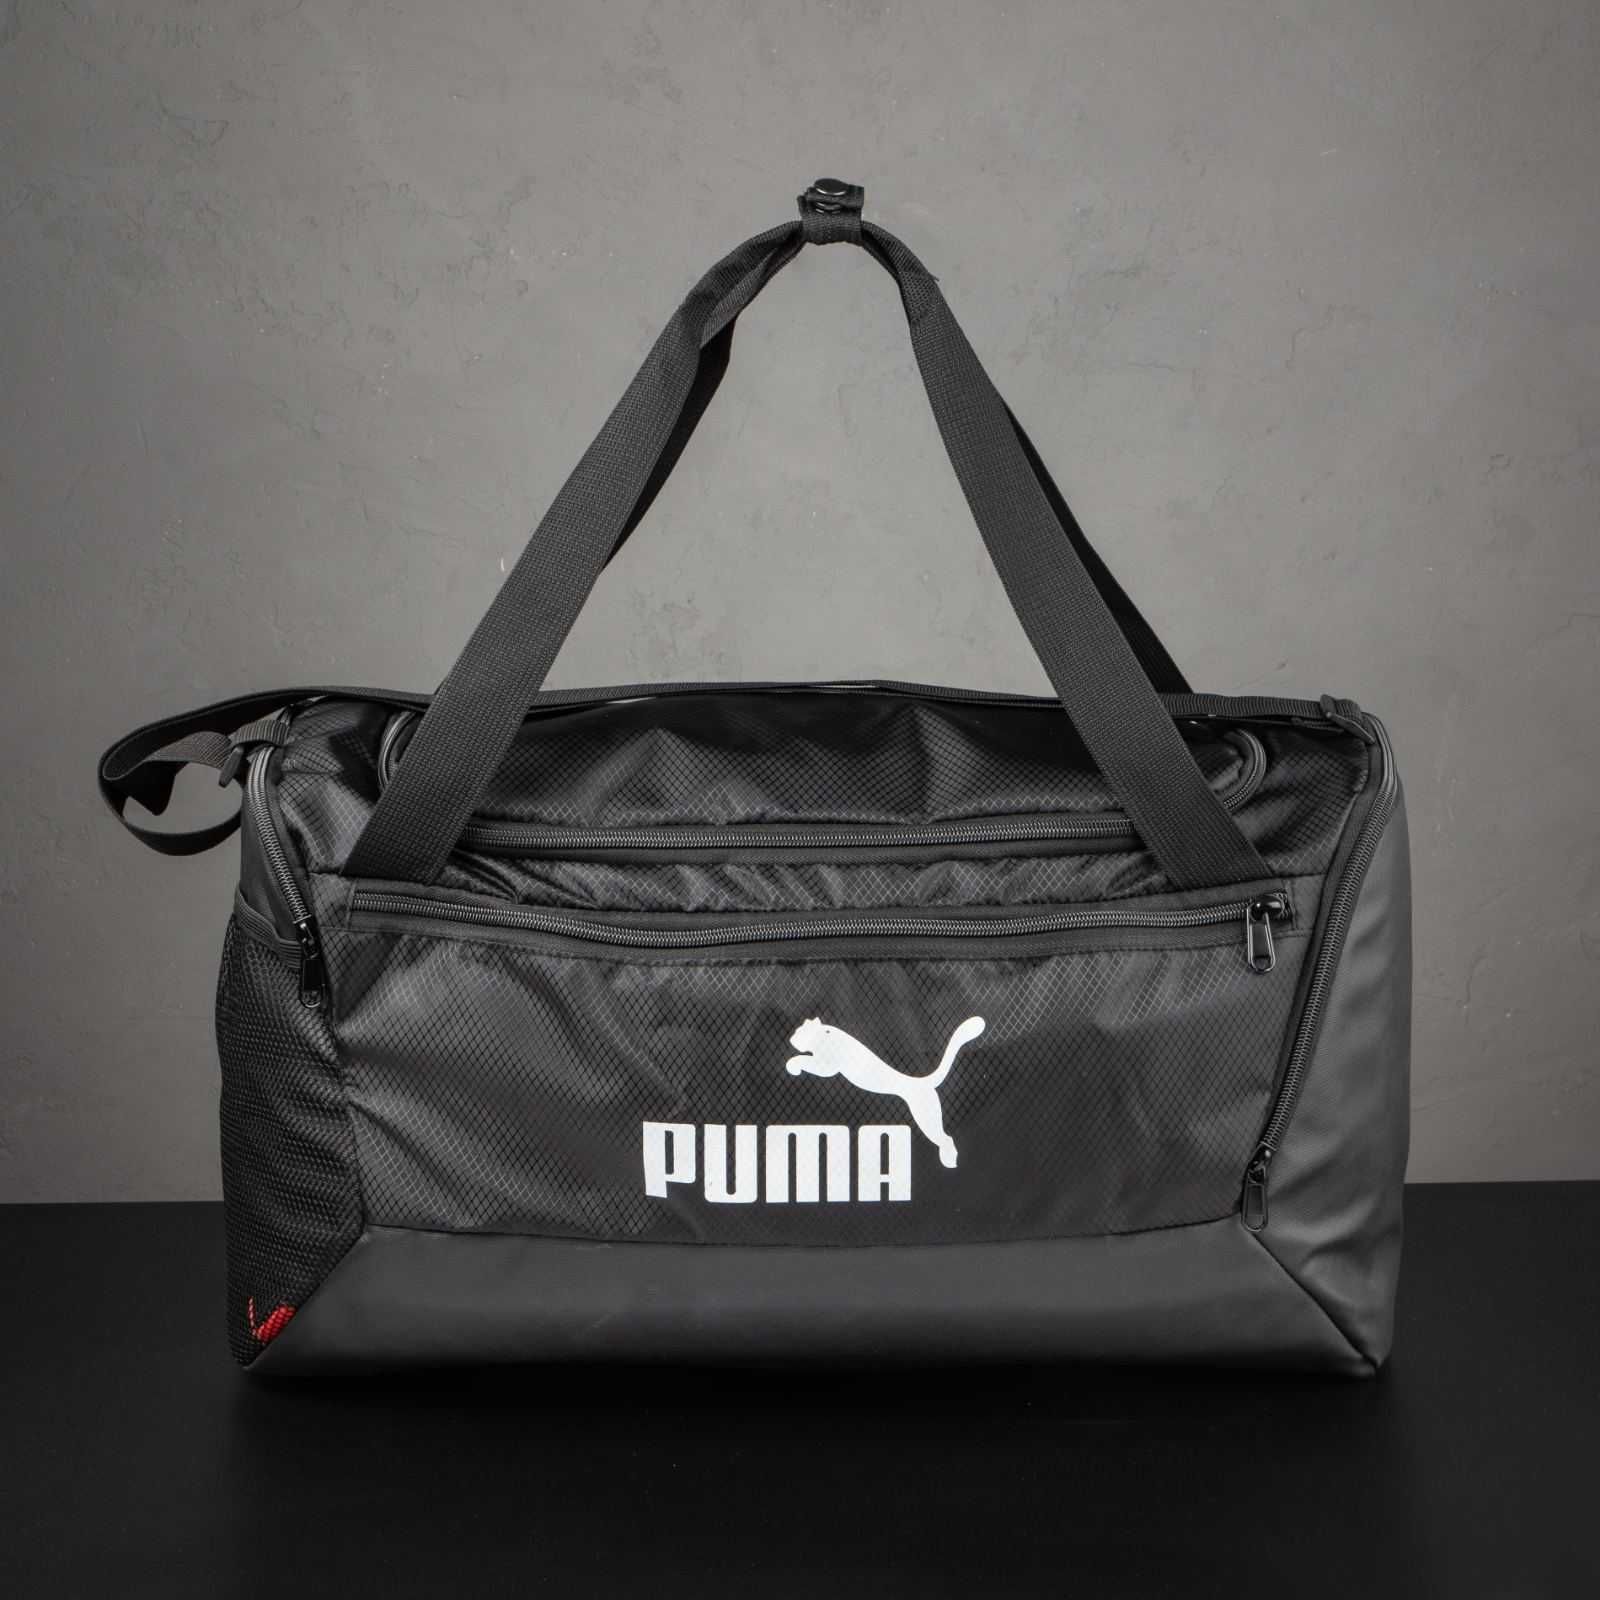 Спортивна сумка Nike Puma Adidas фітнес тренування